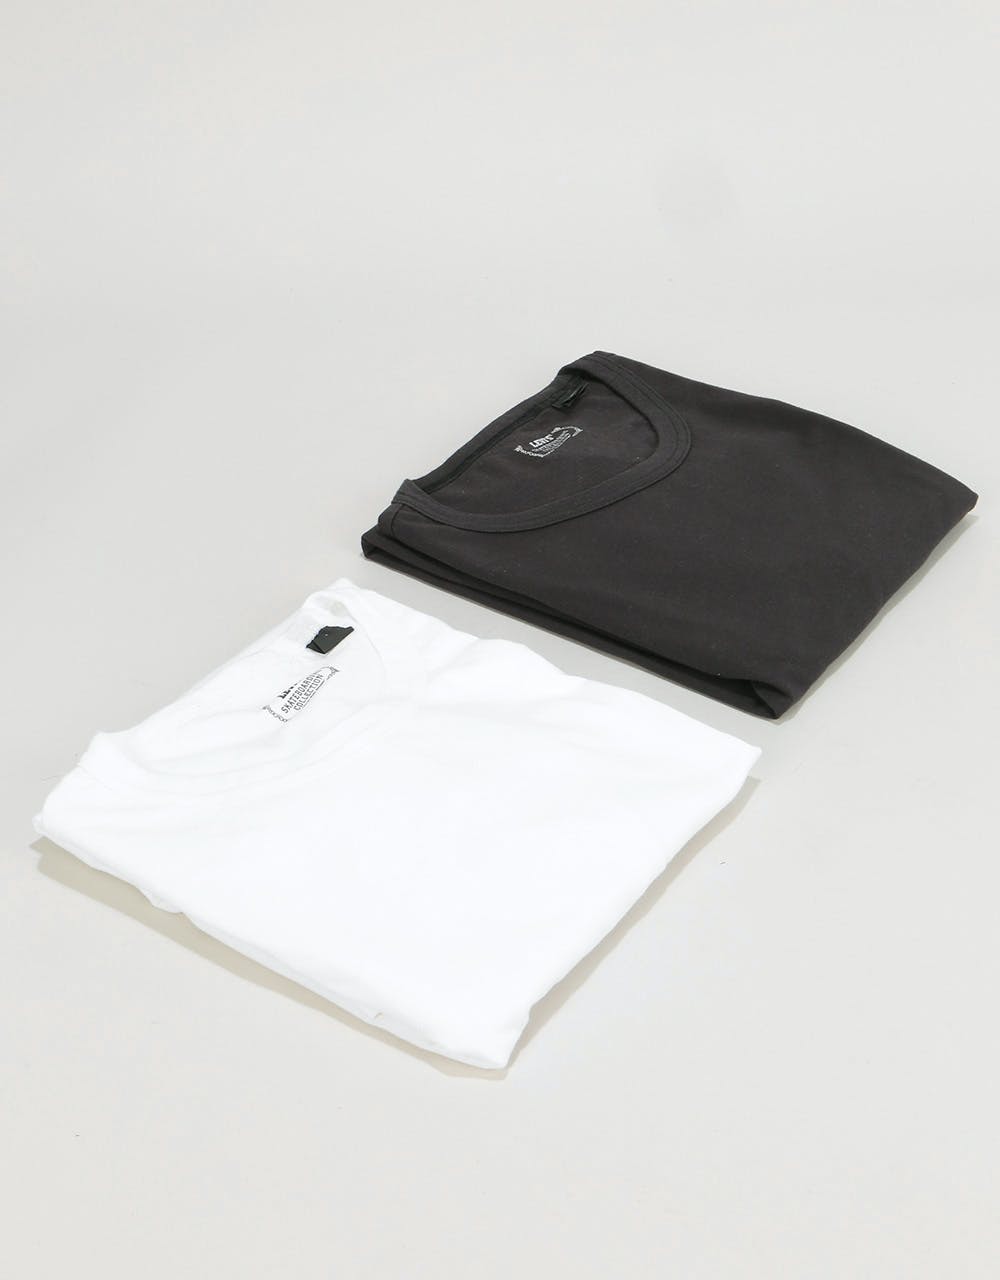 Levi's Skateboarding 2 Pack T-Shirt - Jet Black/Bright White